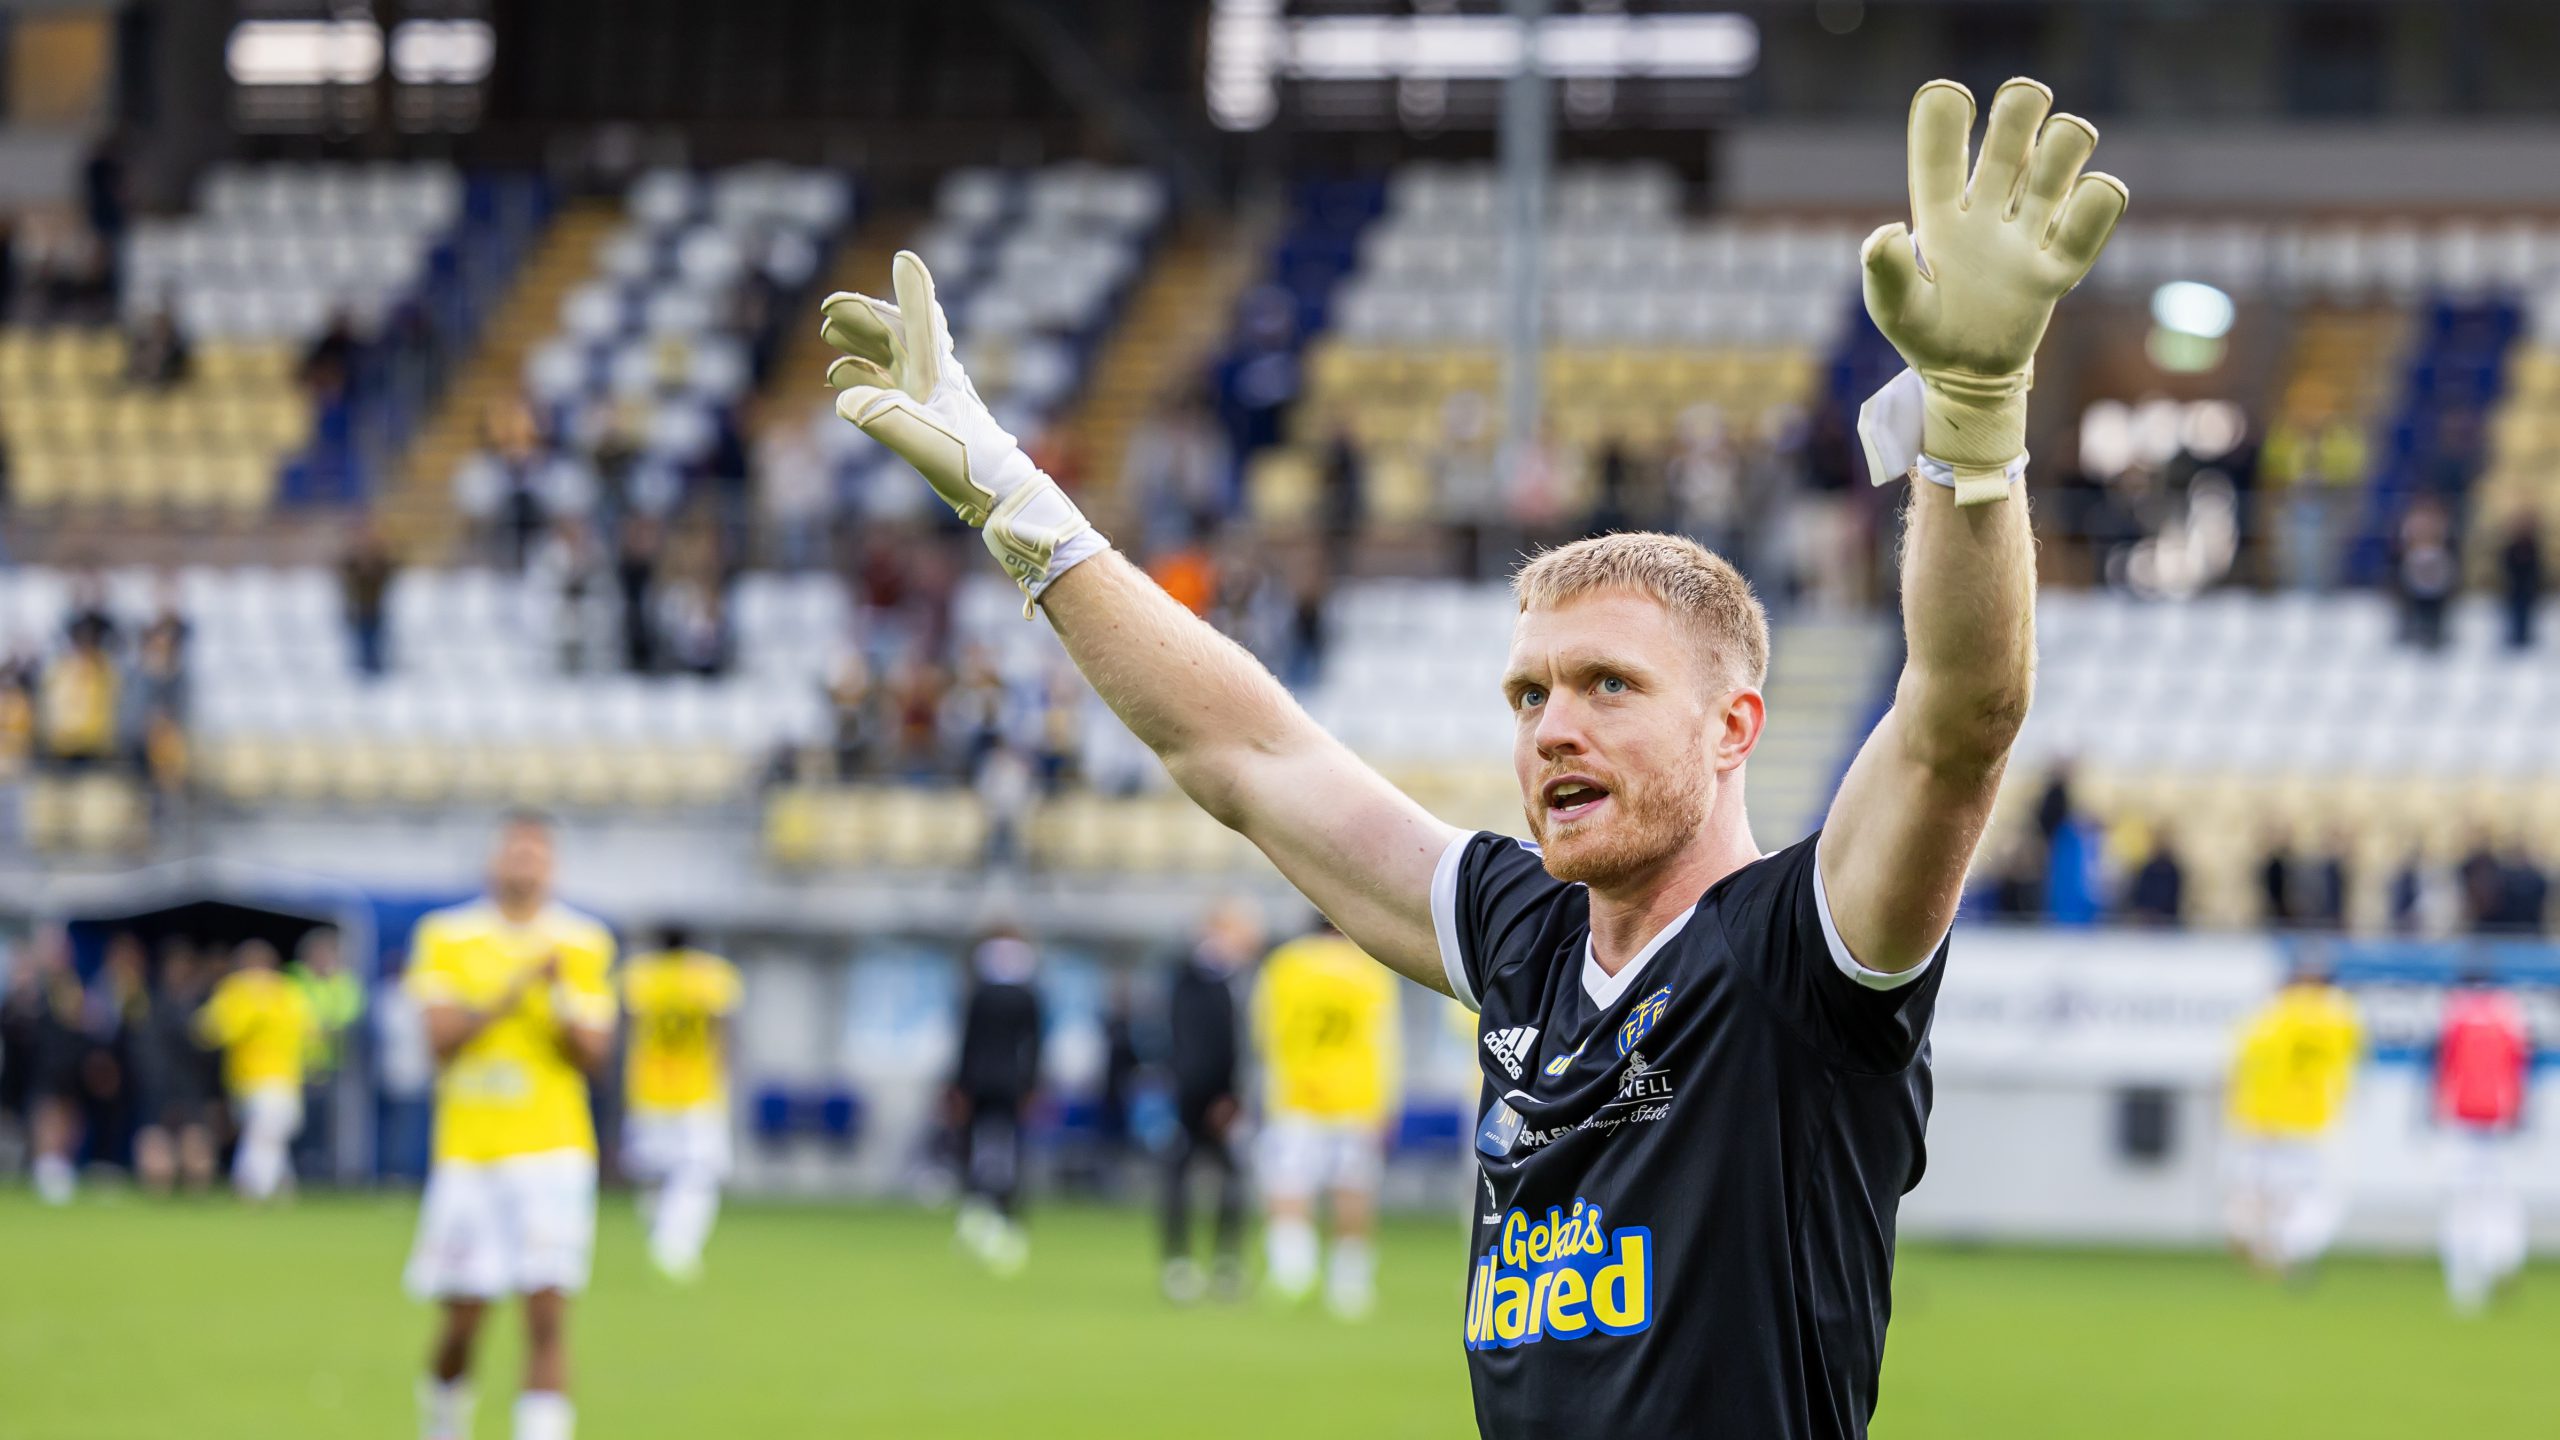 Tim Erlandsson lämnar FFF efter fyra säsonger: ”Med tungt hjärta”